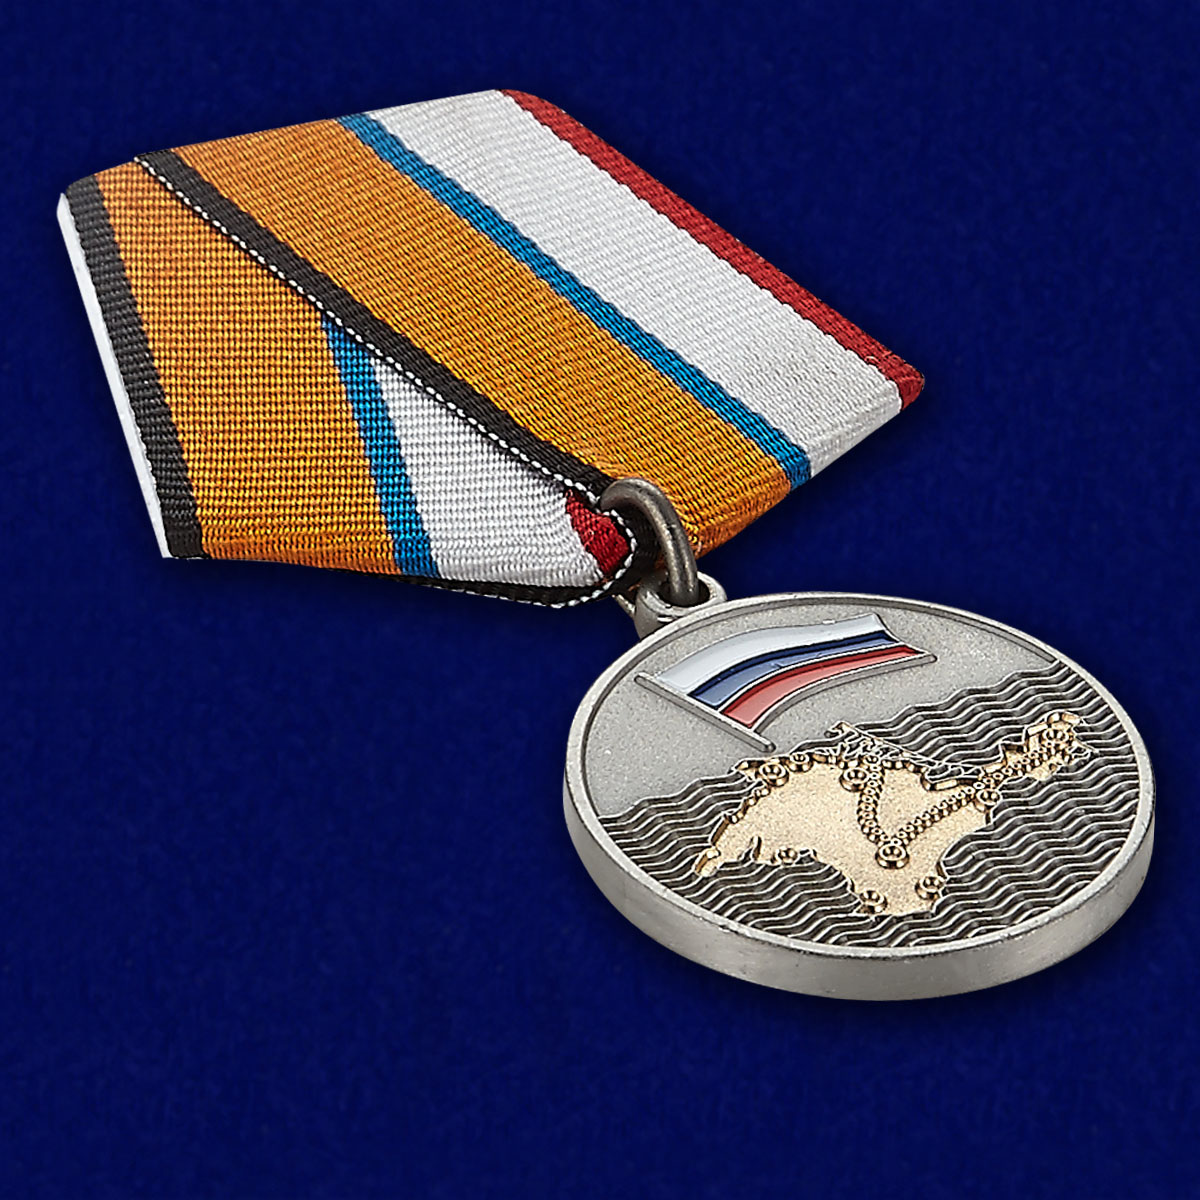 Медаль "За Крымский поход казаков-2014" 